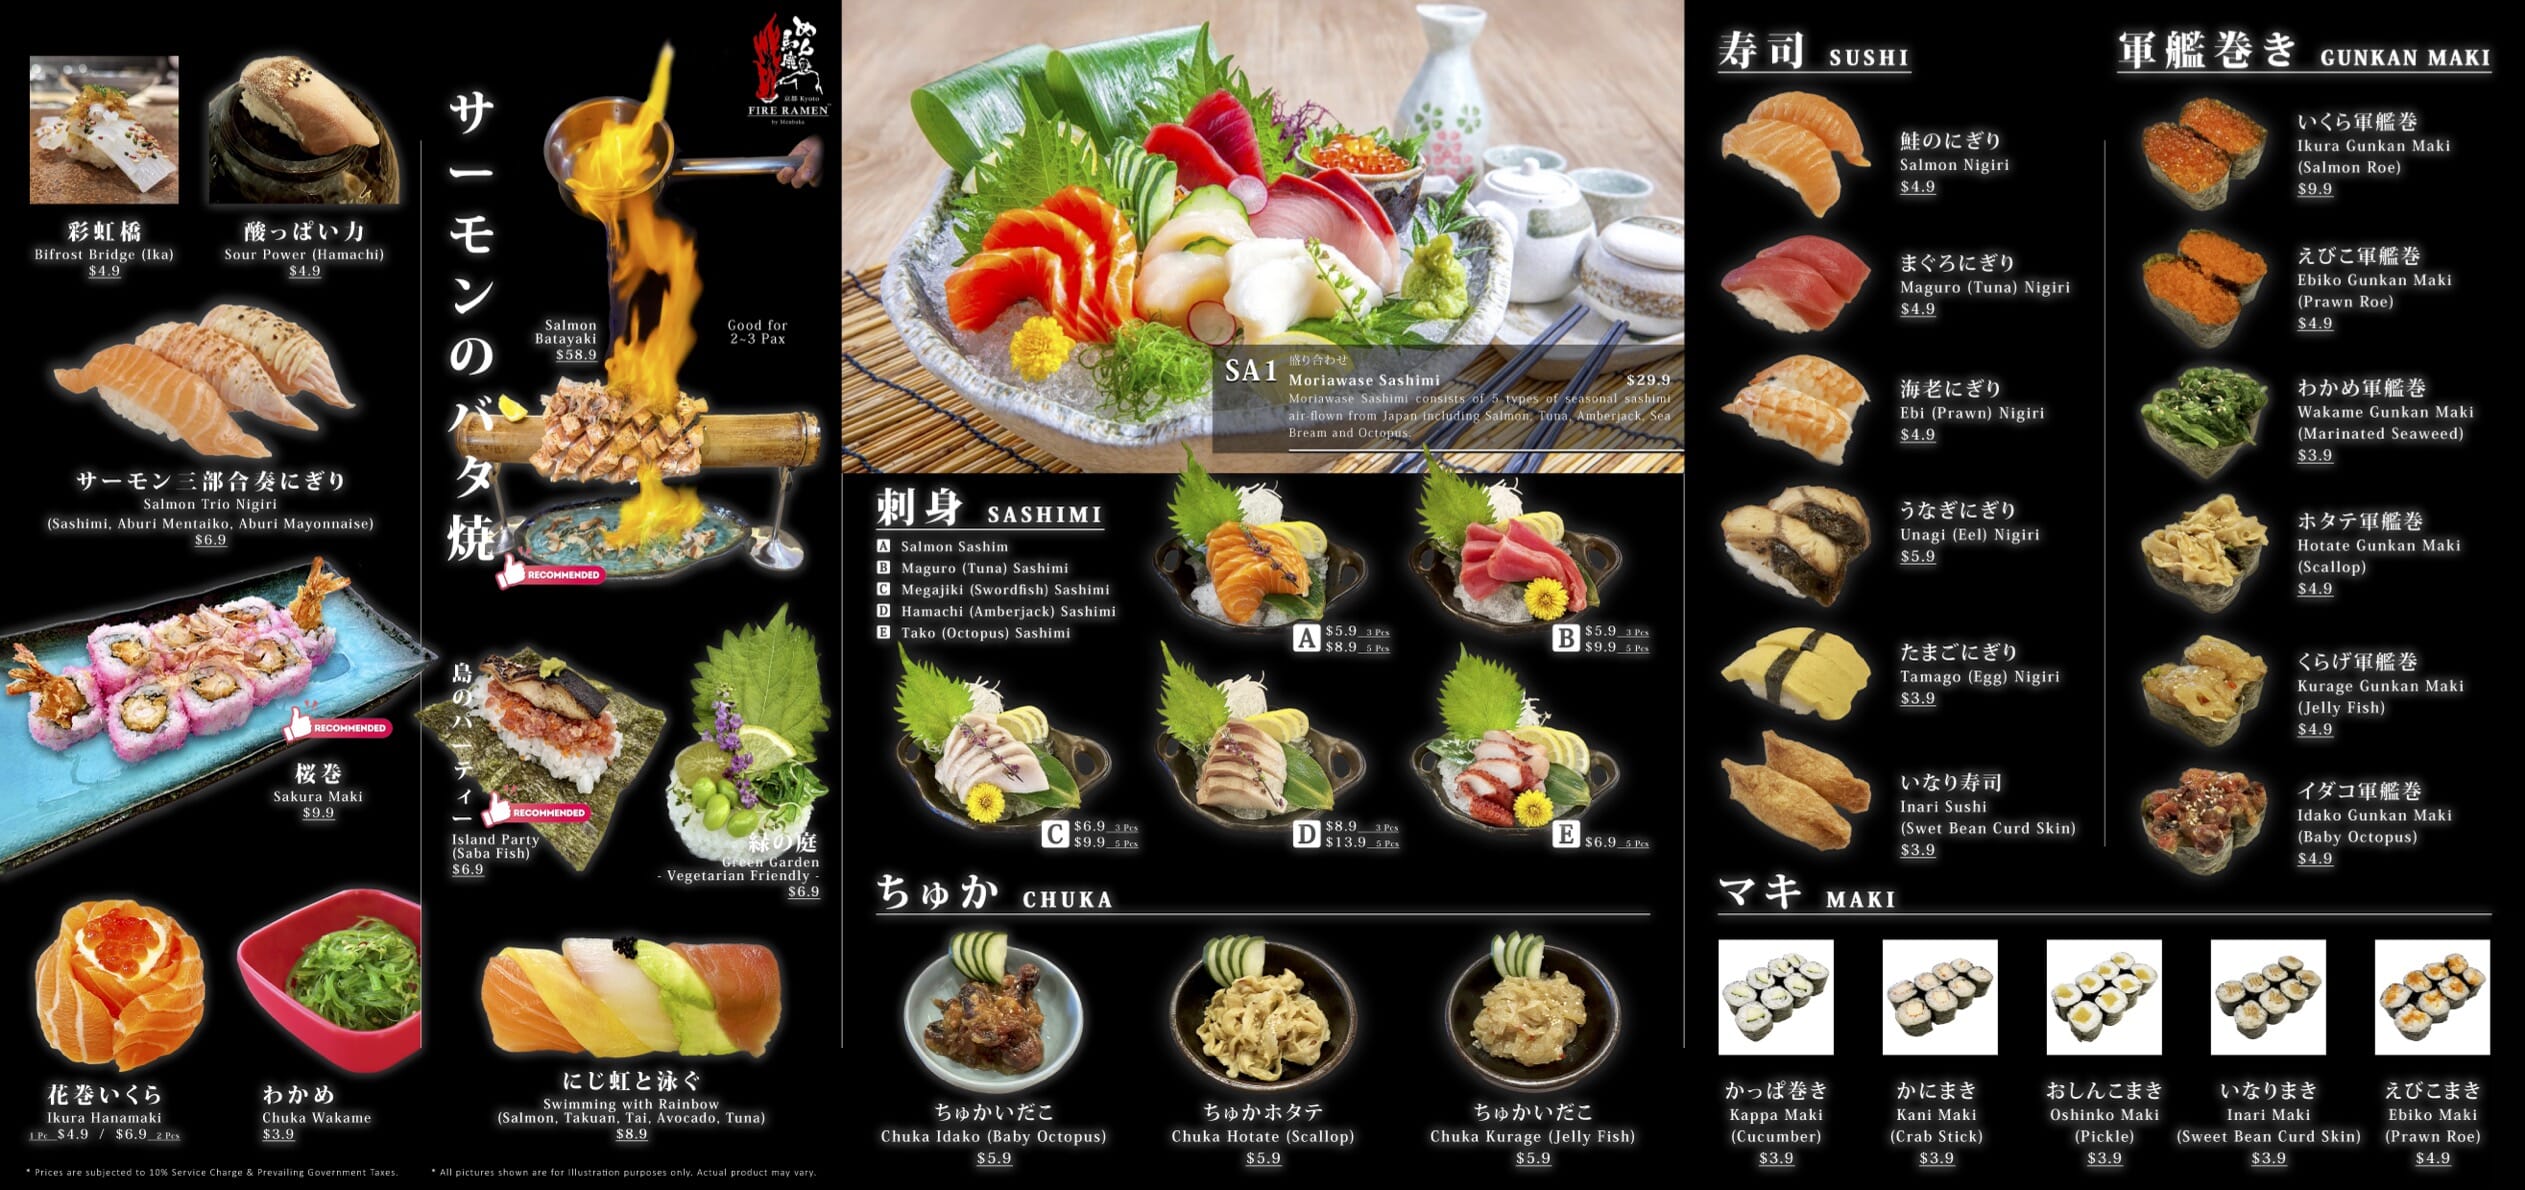 Sushi, Sashimi, Sumiyaki & Alcohol - Menu - 001